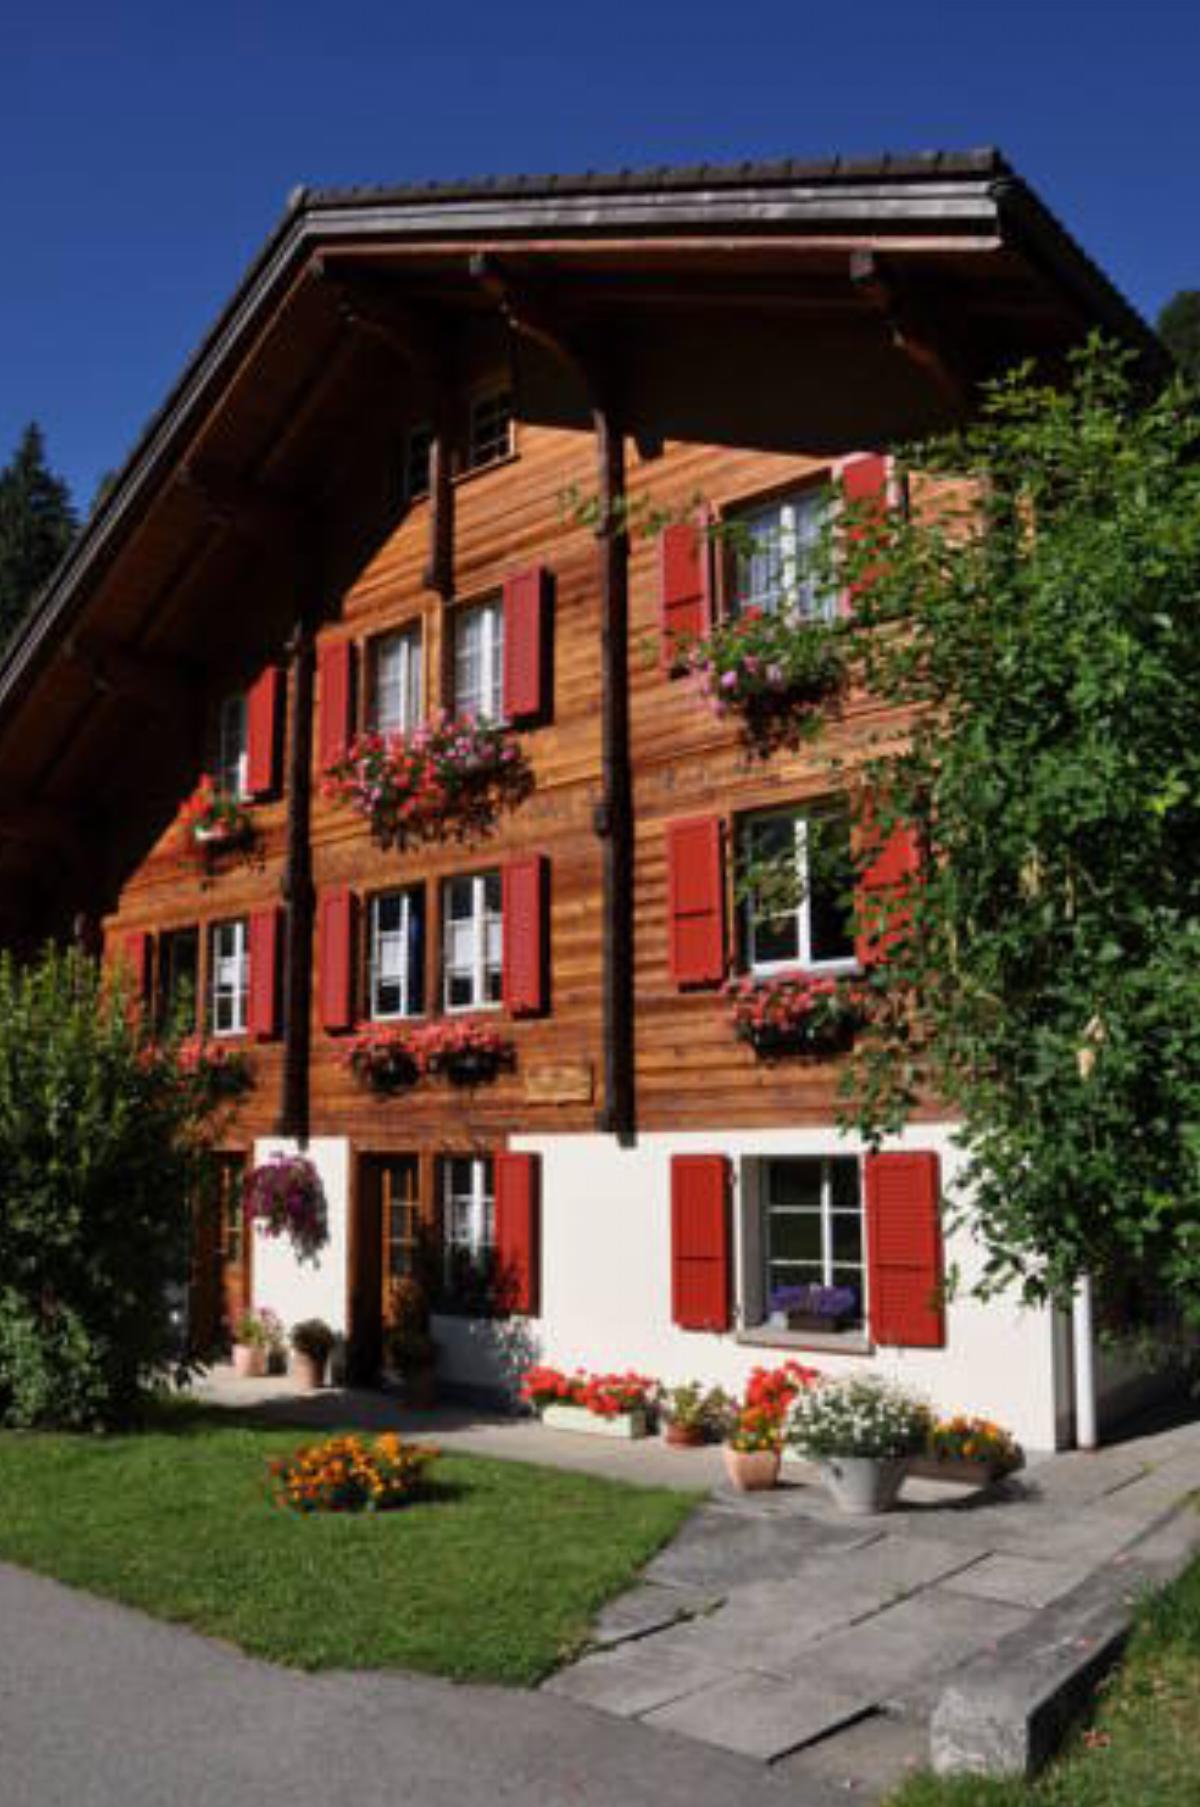 Chalet Allmegrat Hotel Adelboden Switzerland